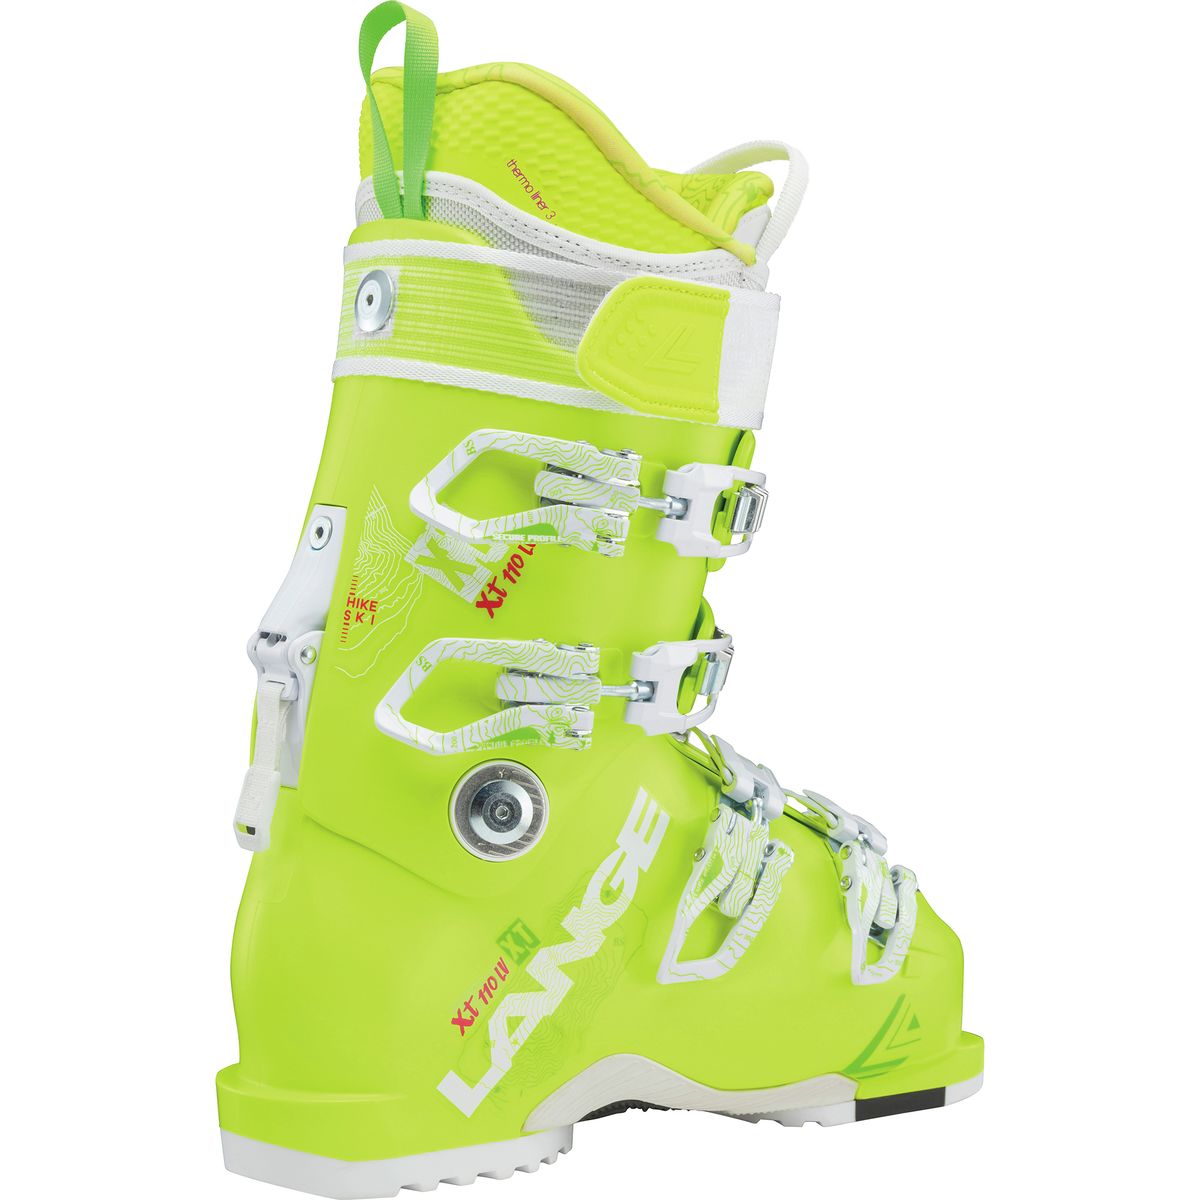 Lange XT 110 LV Ski Boot - Women's - Ski